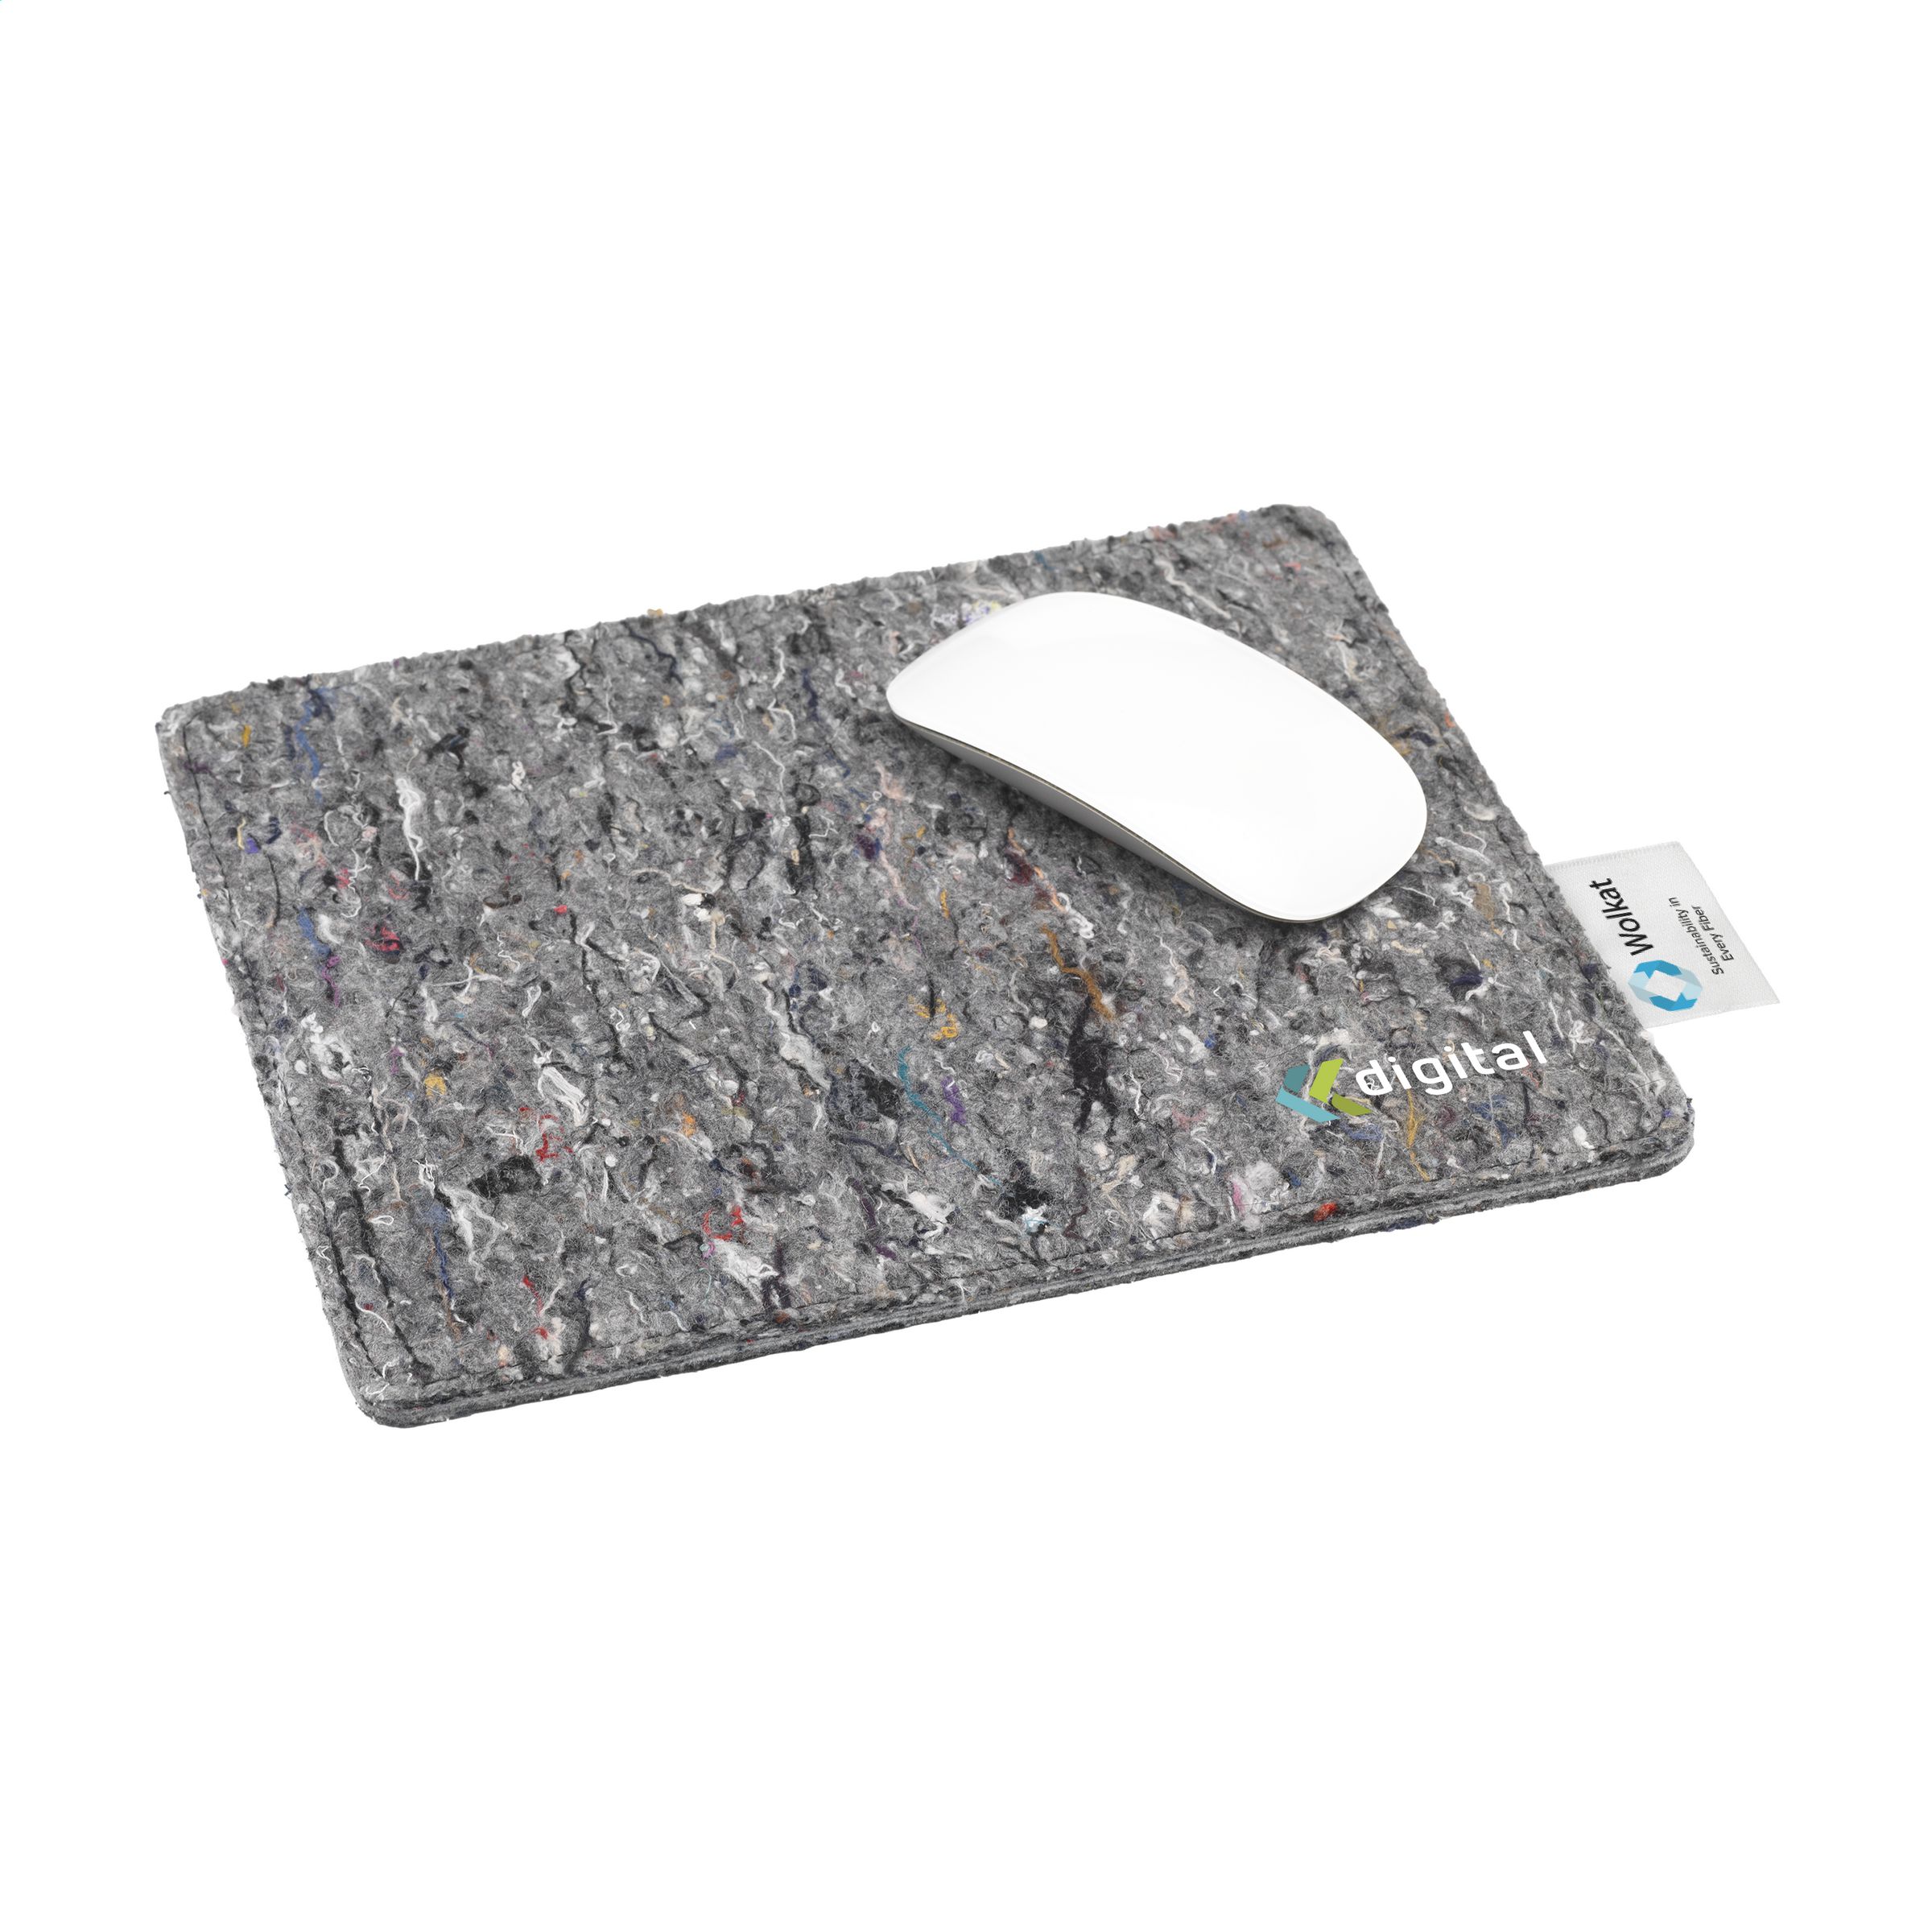 Tappetino per mouse in feltro di tessuto riciclato sostenibile - Esine